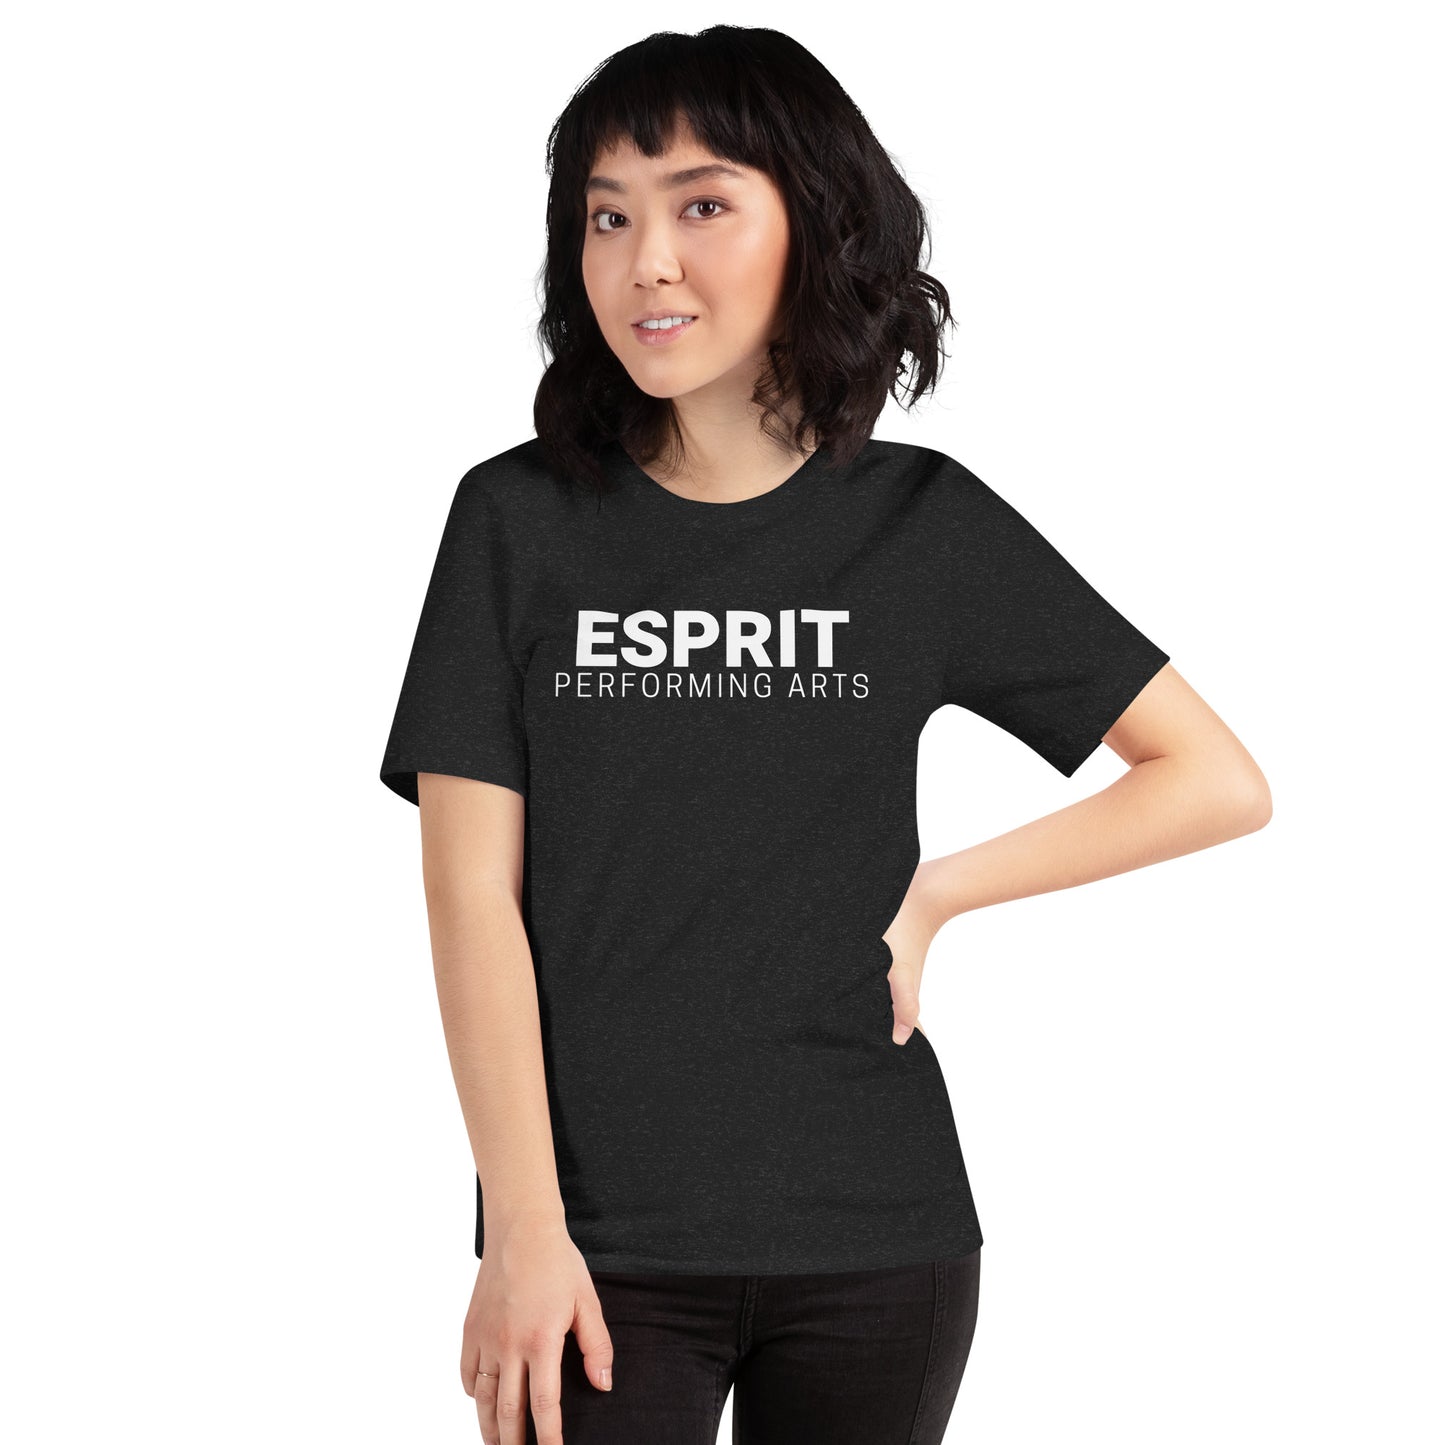 Esprit Performing Arts Logo Adult T-Shirt